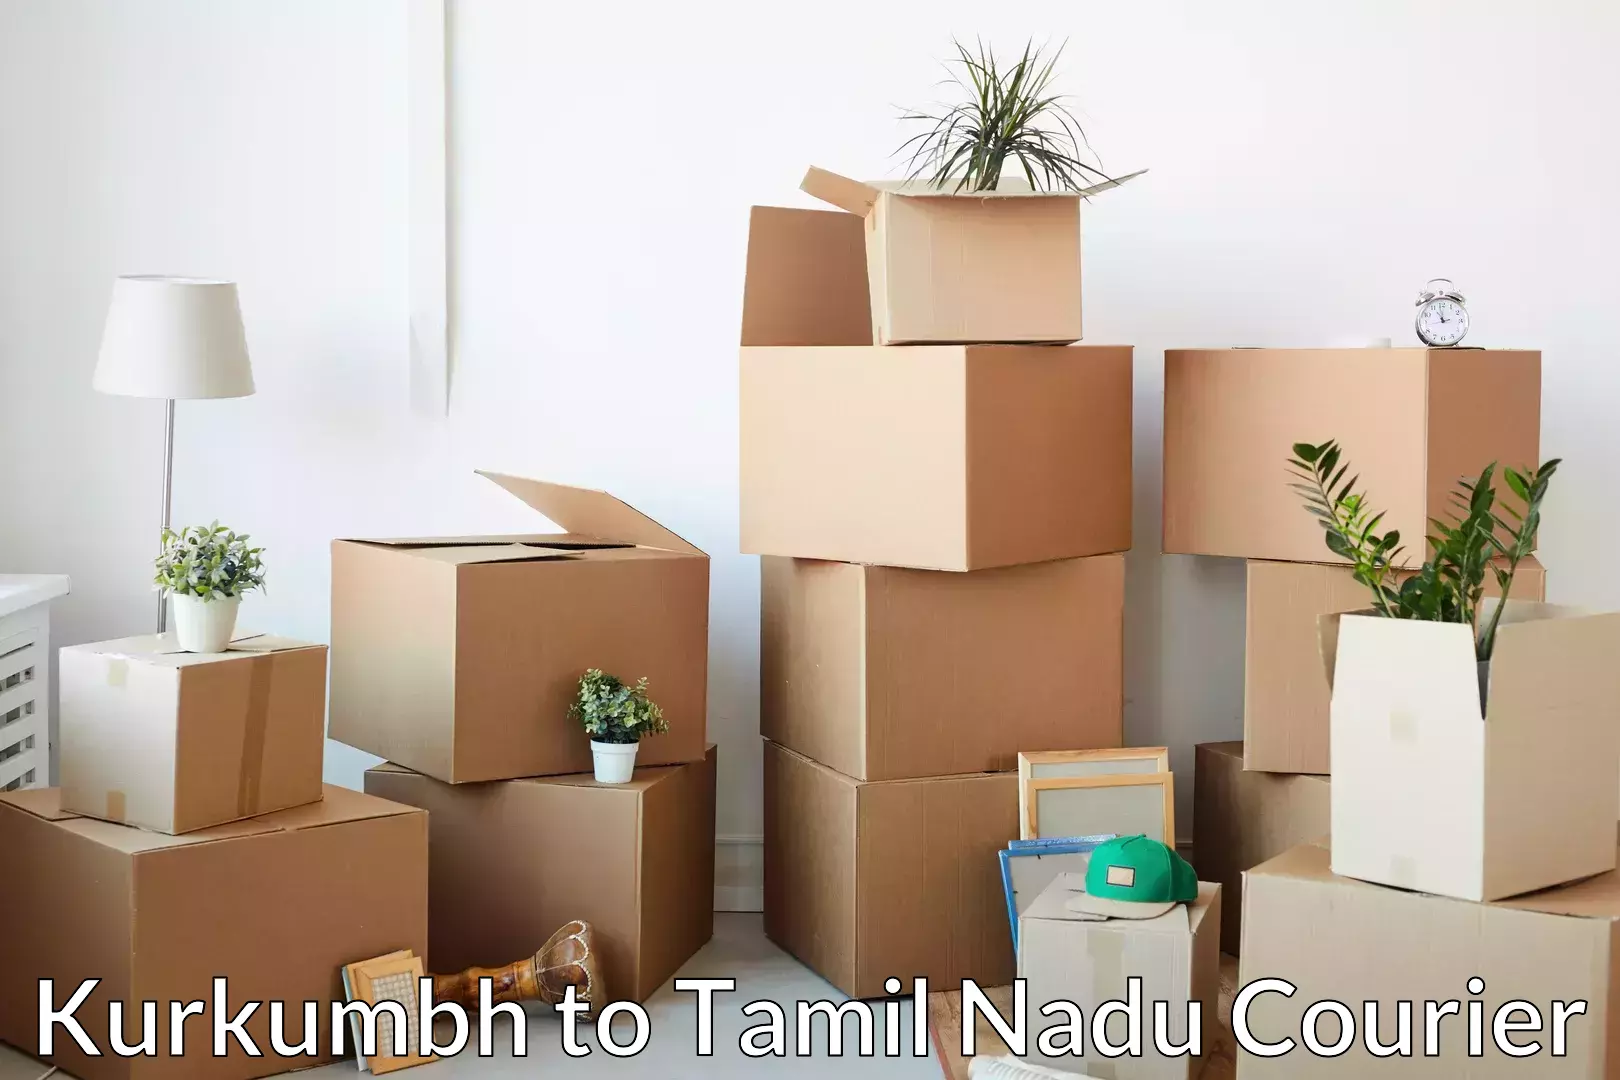 Household moving and storage Kurkumbh to Tamil Nadu